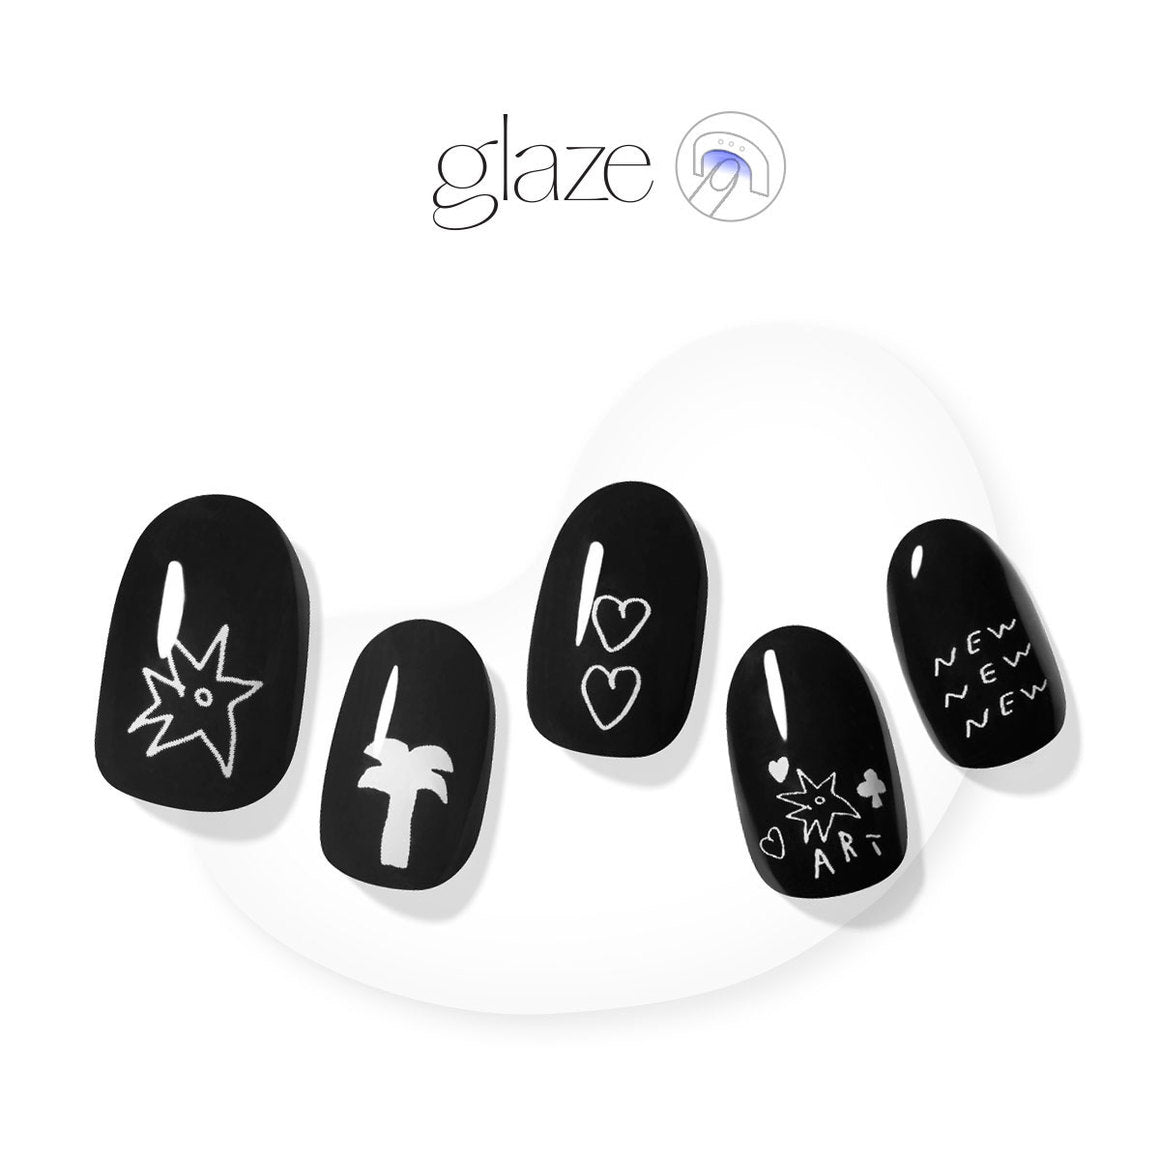 New New Nail - Glaze Art - Manicure - Dashing Diva Singapore